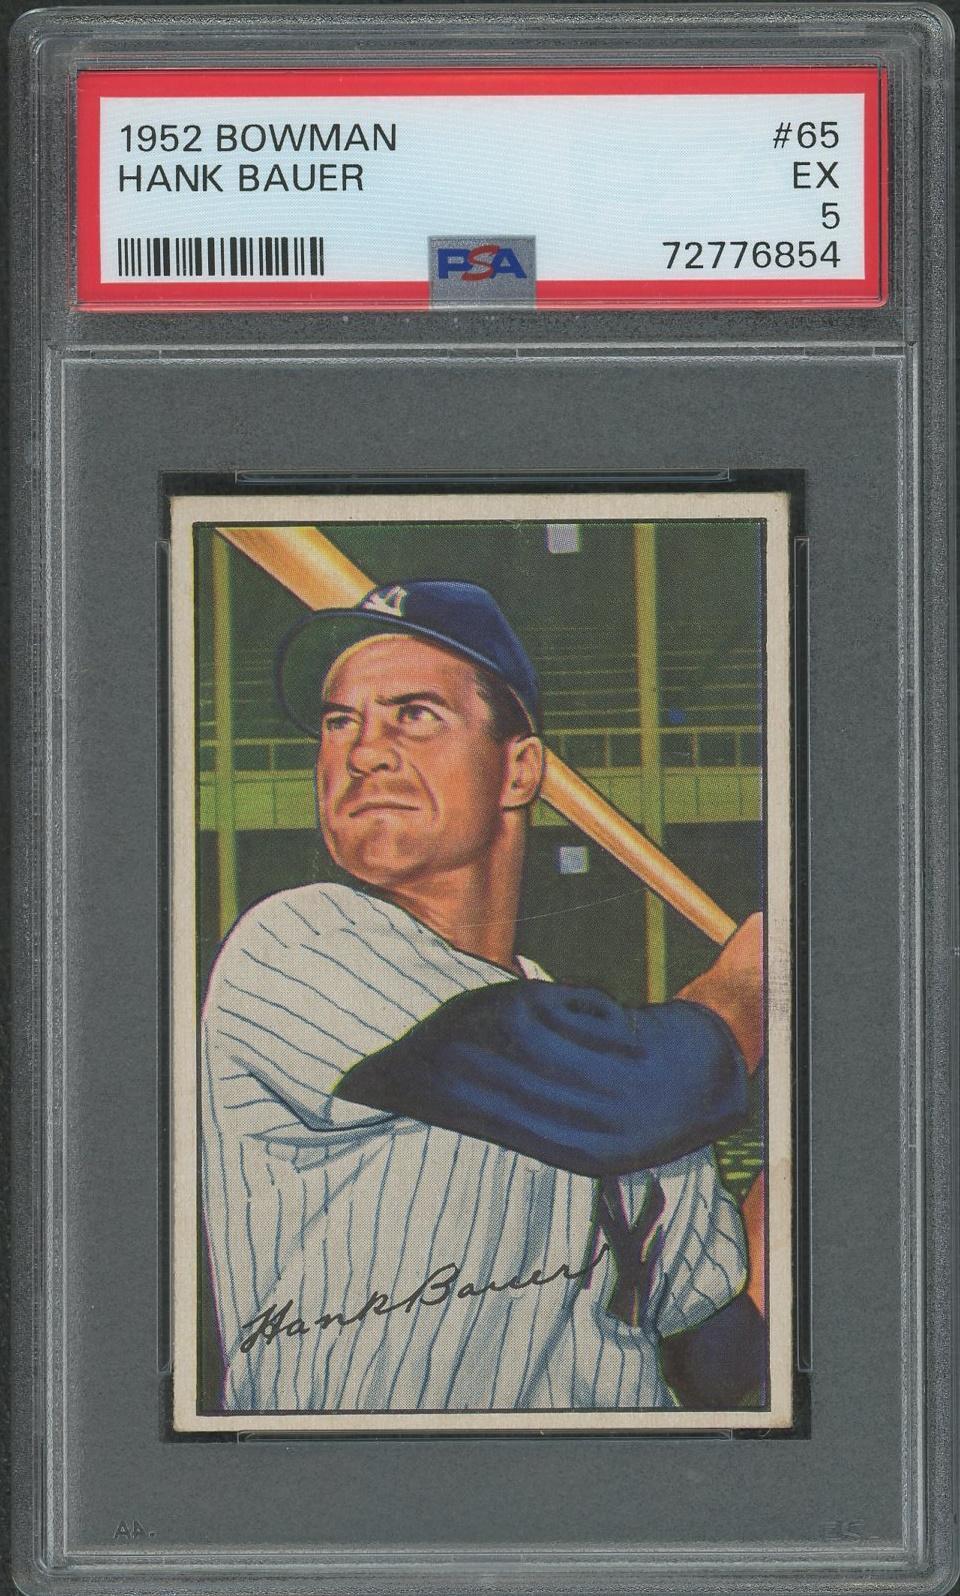 1952 Bowman Baseball #65 Hank Bauer PSA 5 (EX)